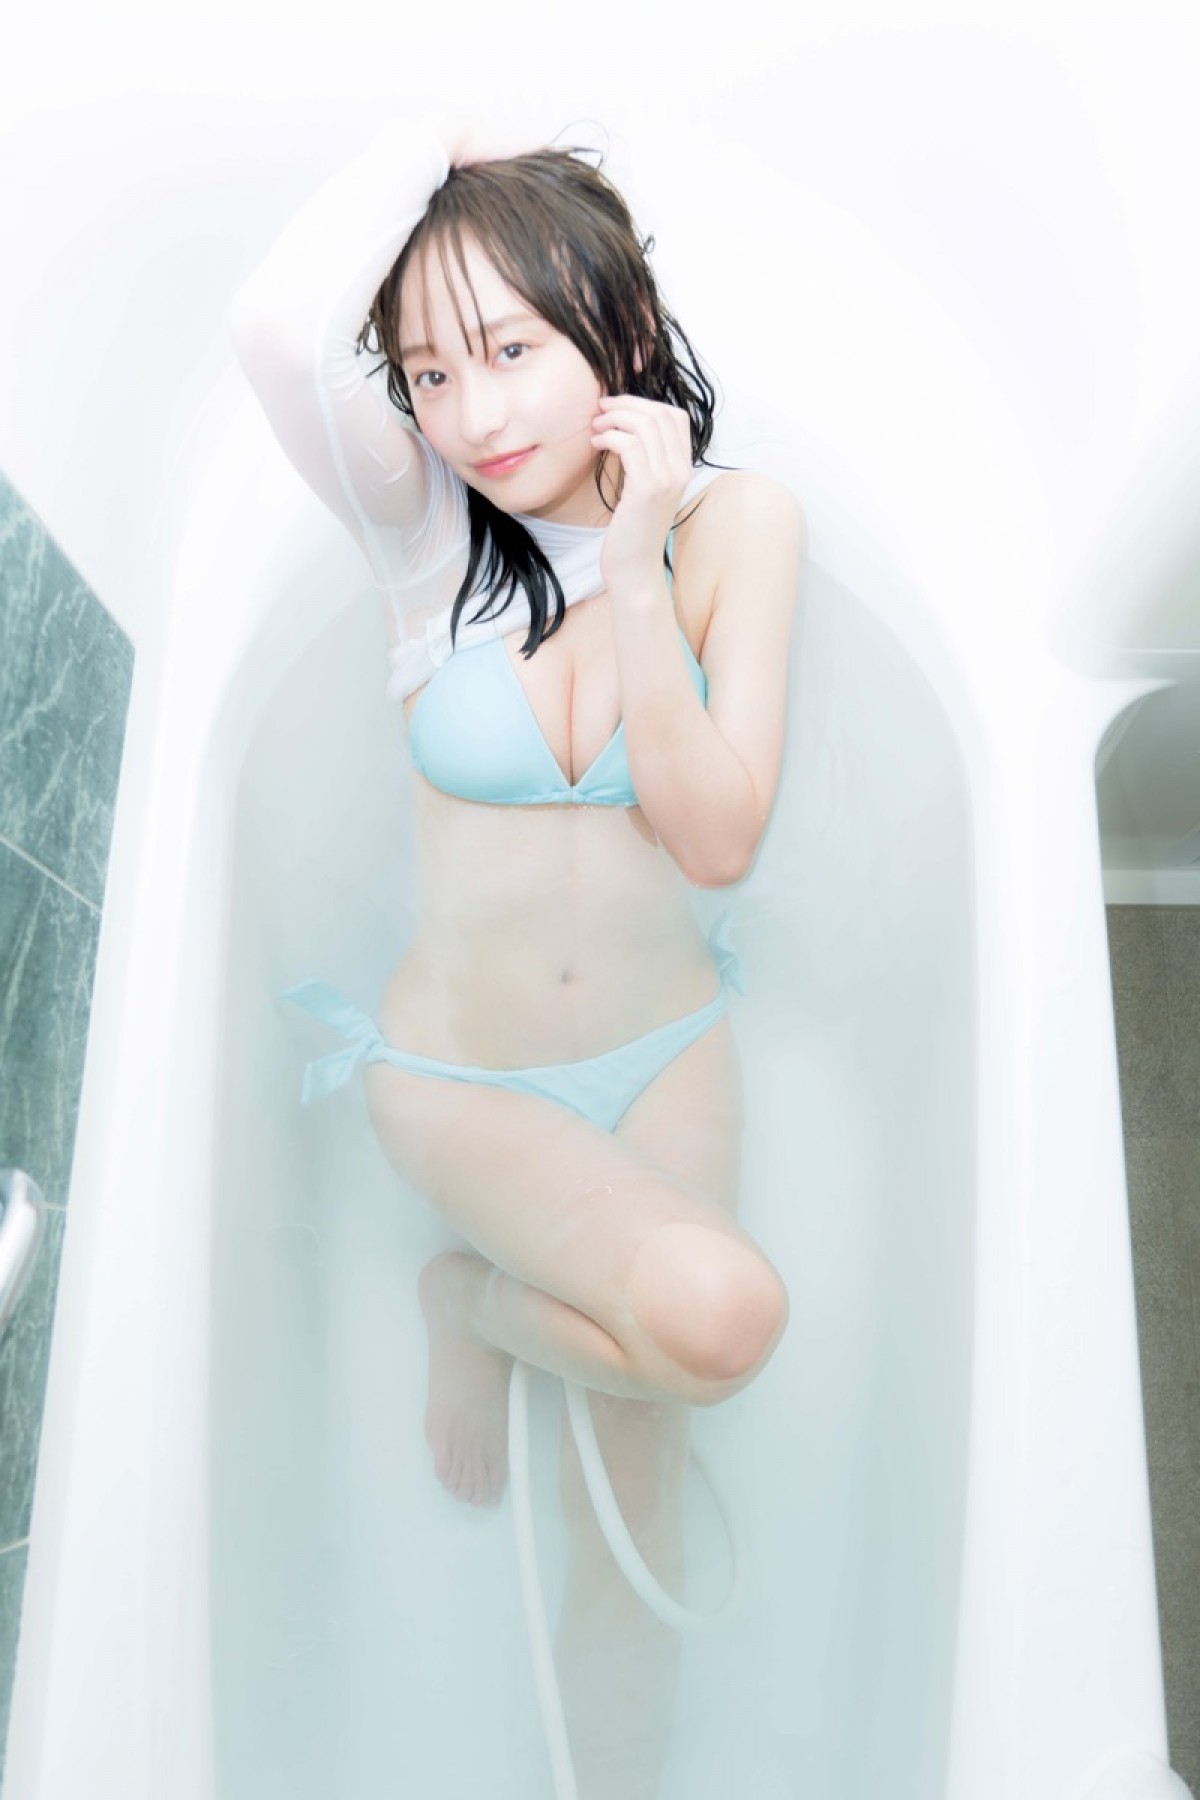 日向坂46・影山優佳、新たな水着カット公開「急遽ホテルのお風呂で撮影」